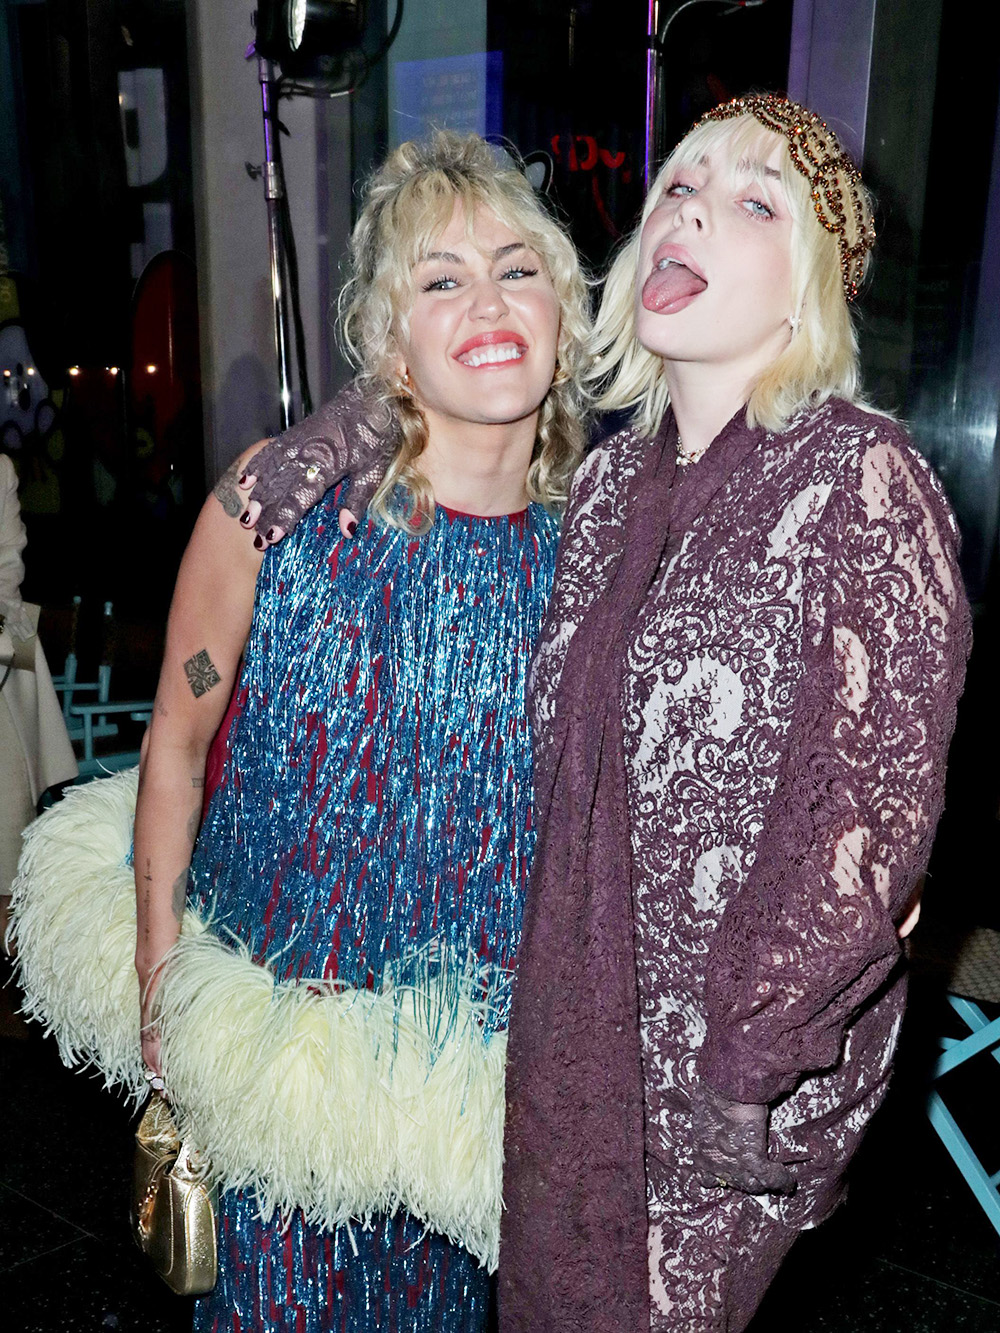 Miley Cyrus and Billie Eilish